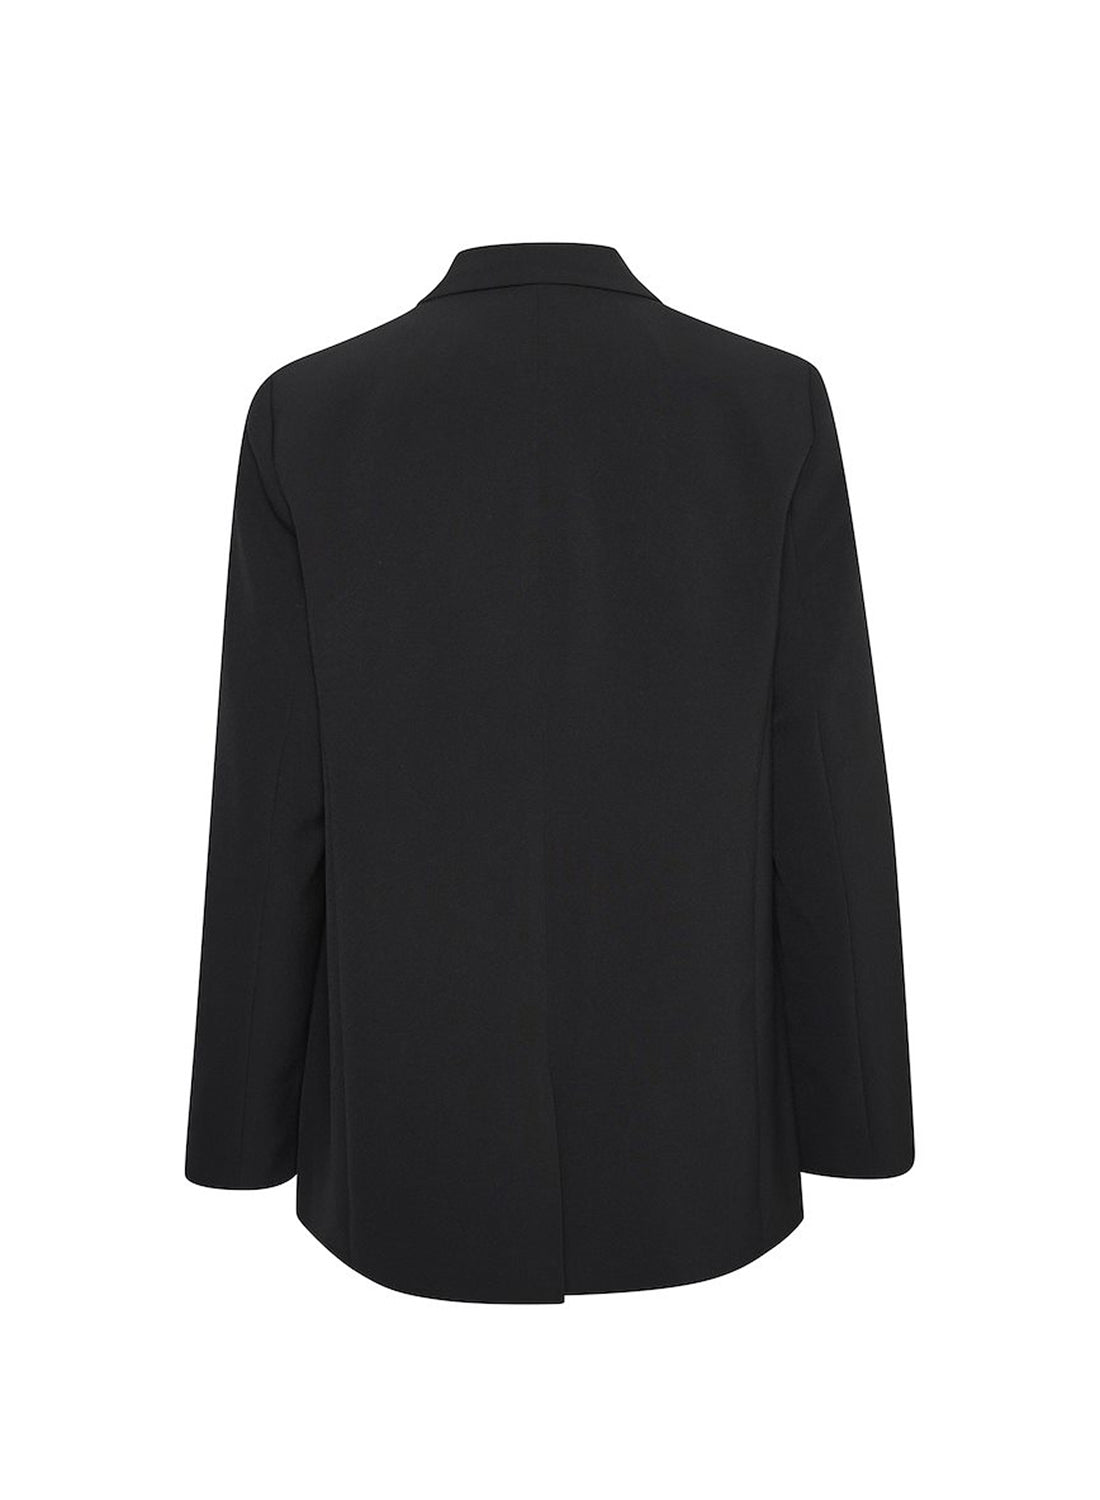 My Essential Wardrobe 27 The Tailored Blazer Black